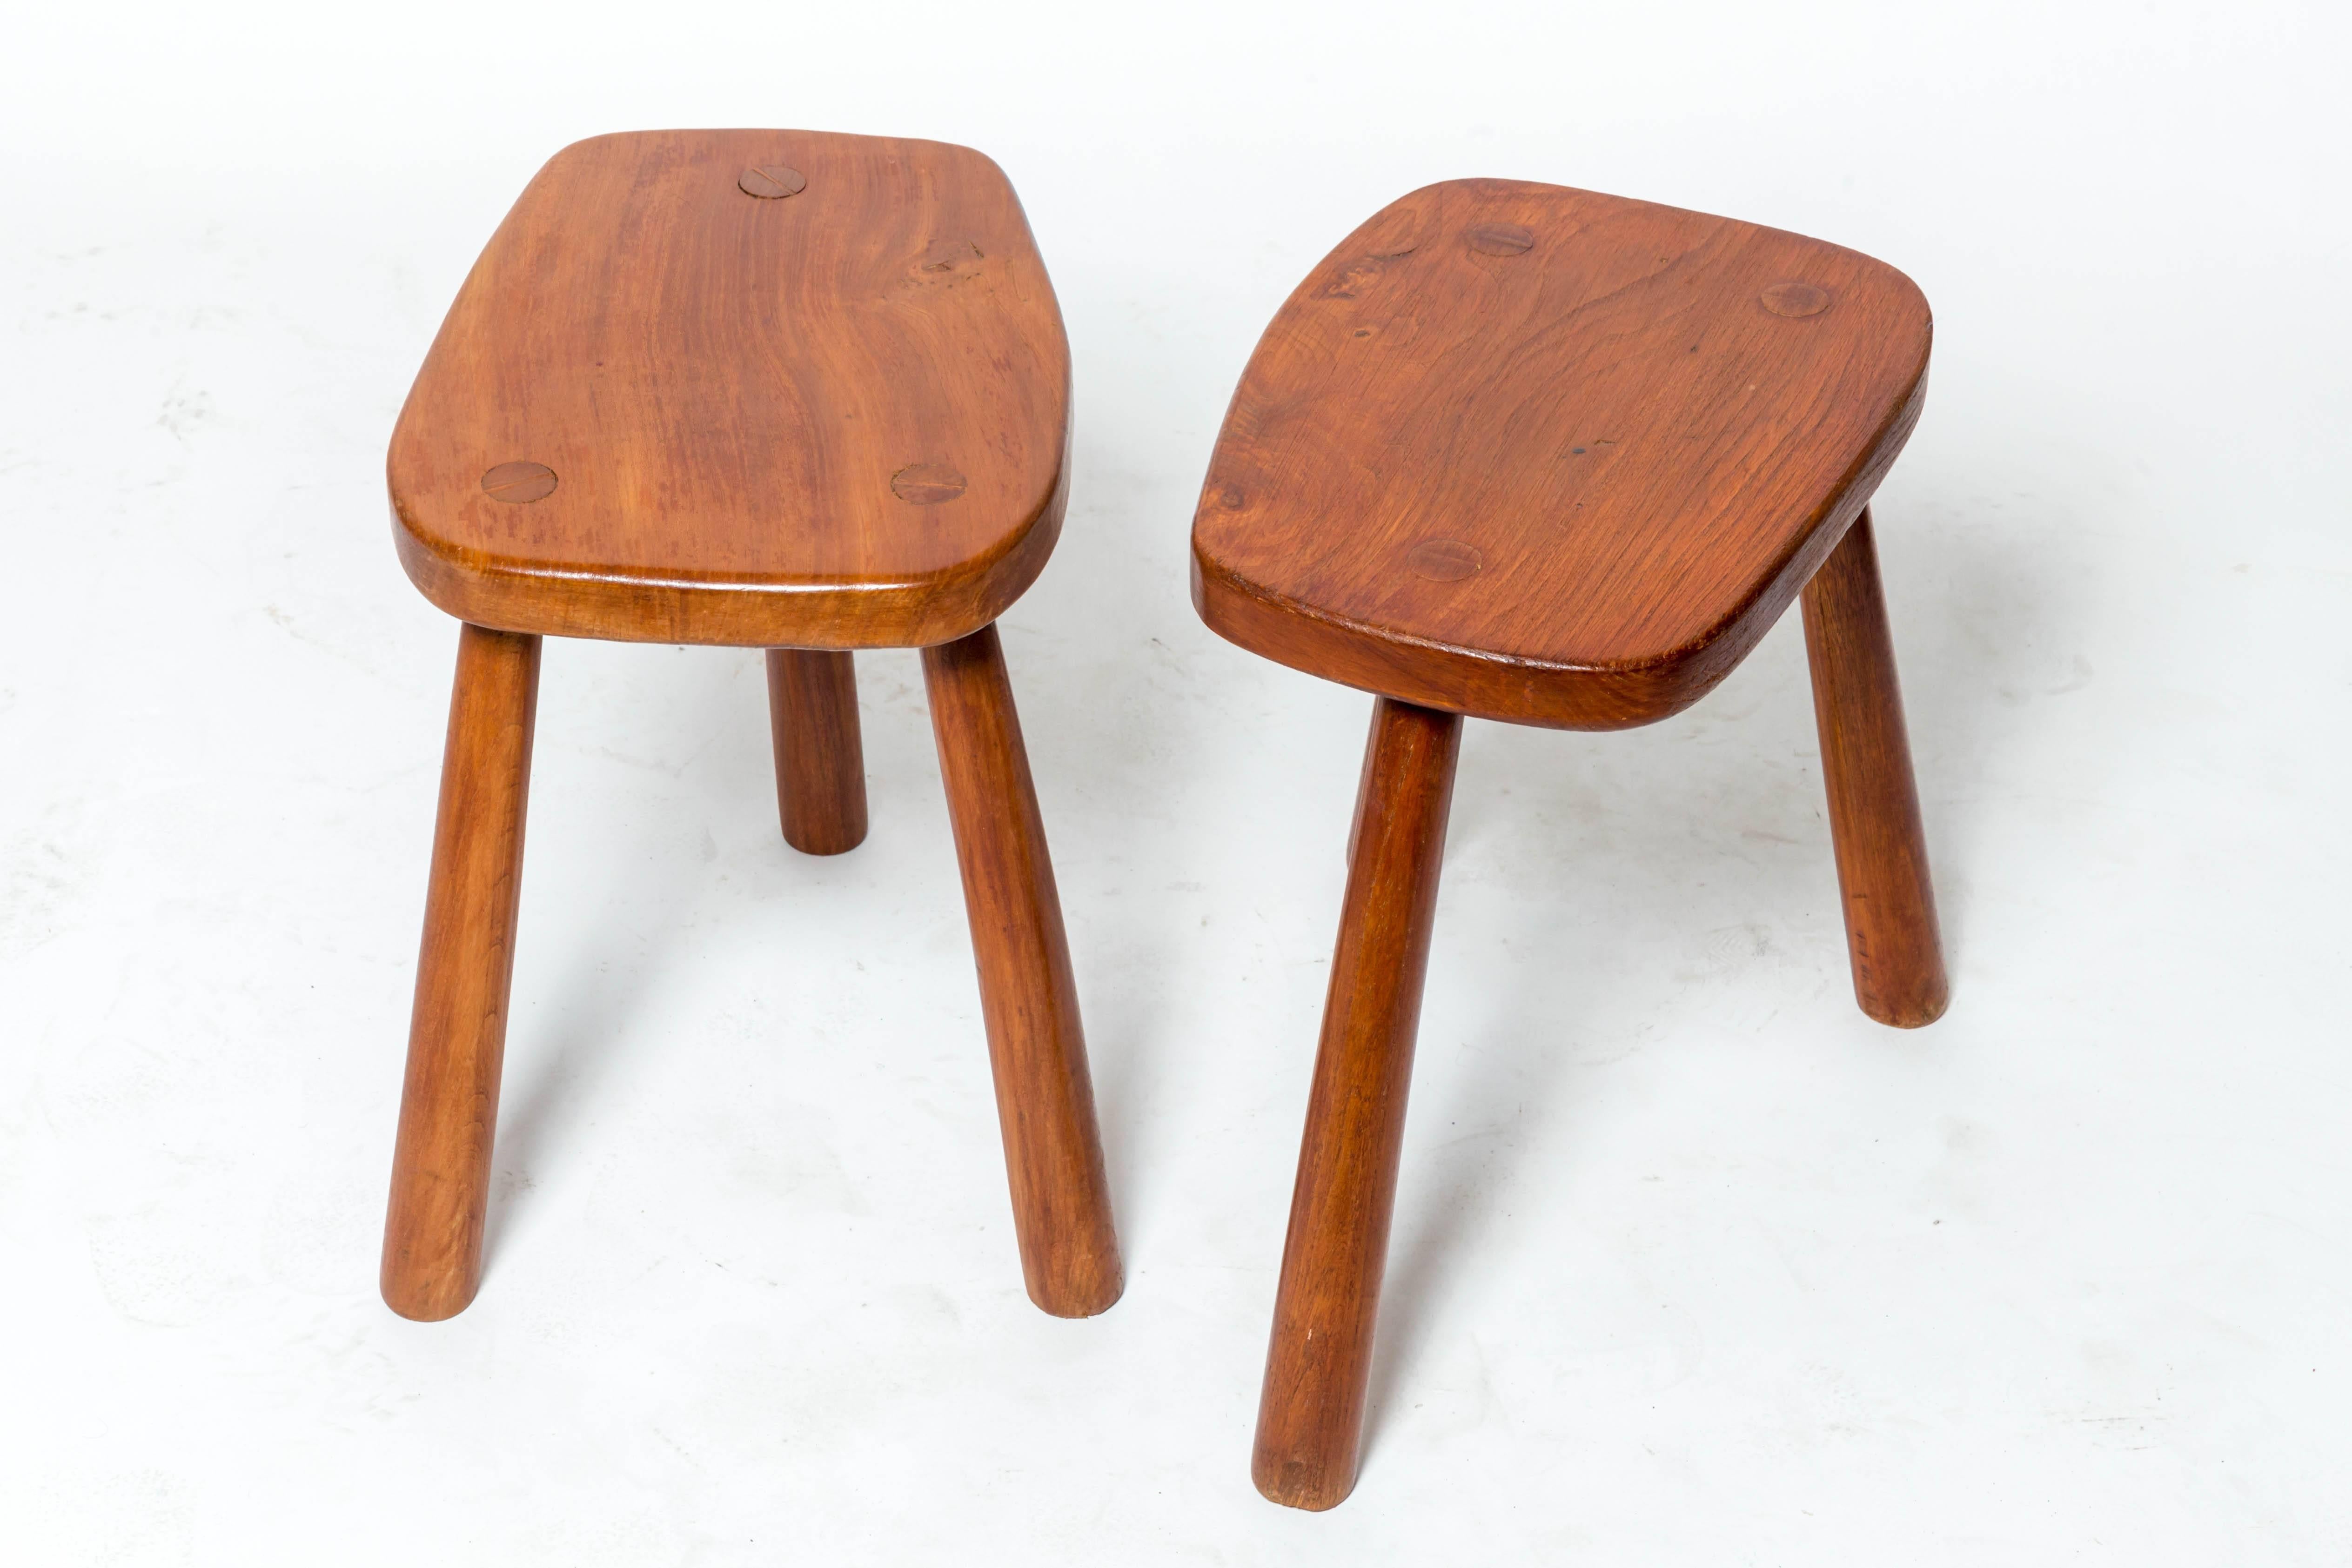 Tabouret en bois à trois pieds, simple mais sophistiqué, France, vers les années 1950. 

Quatre disponibles ; vendus individuellement.